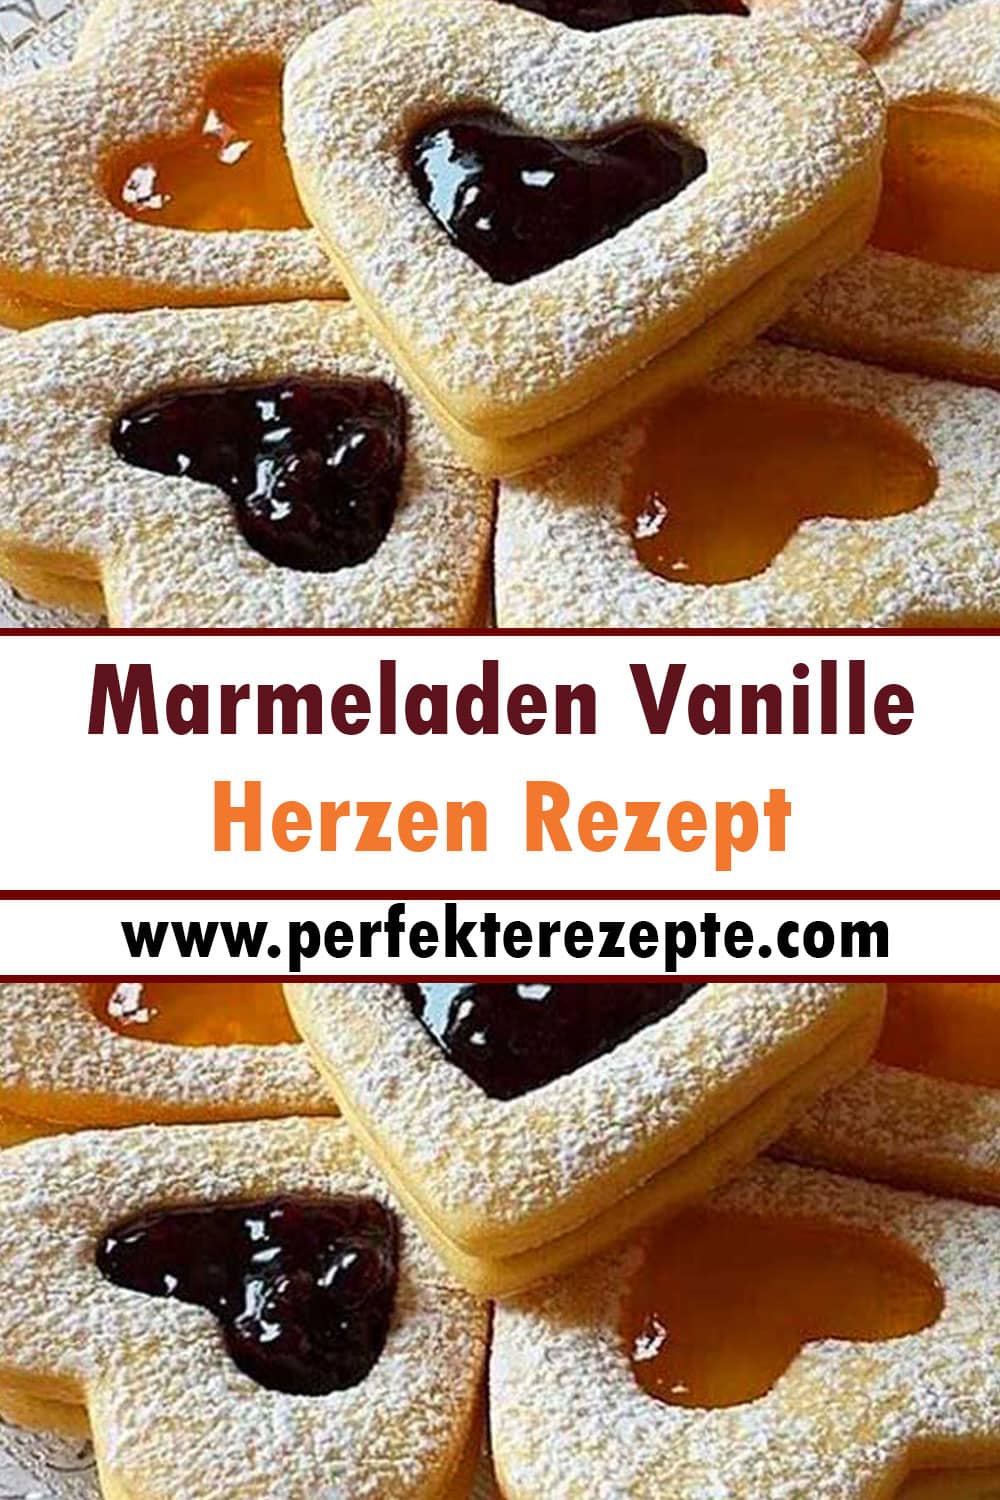 Marmeladen Vanille Herzen Rezept